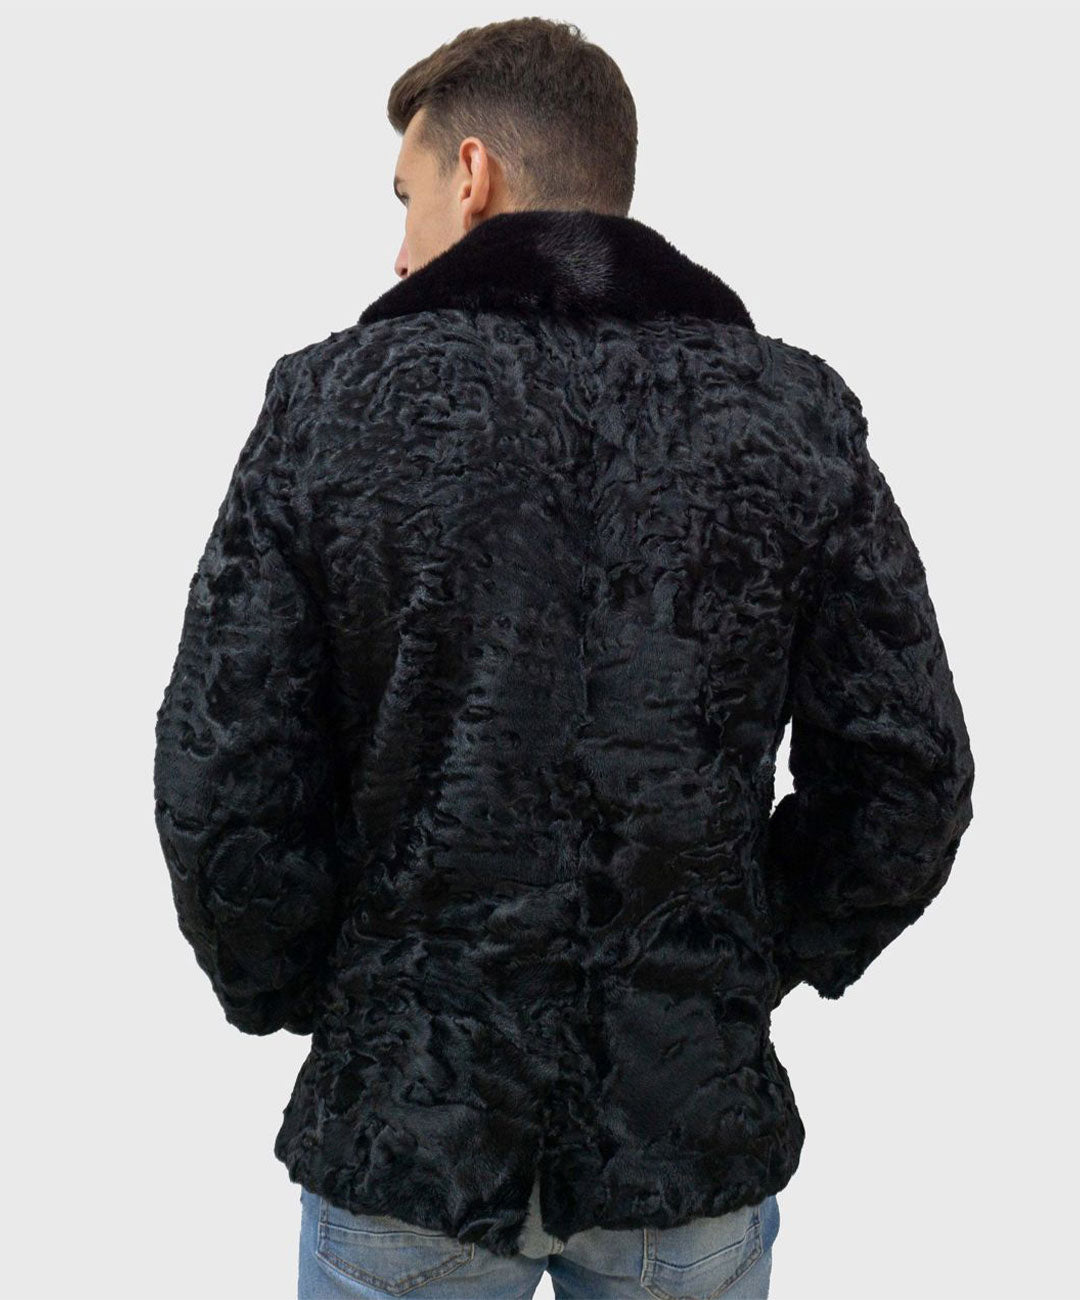 Men's Black Astrakhan Fur Jacket with Mink Fur Collar